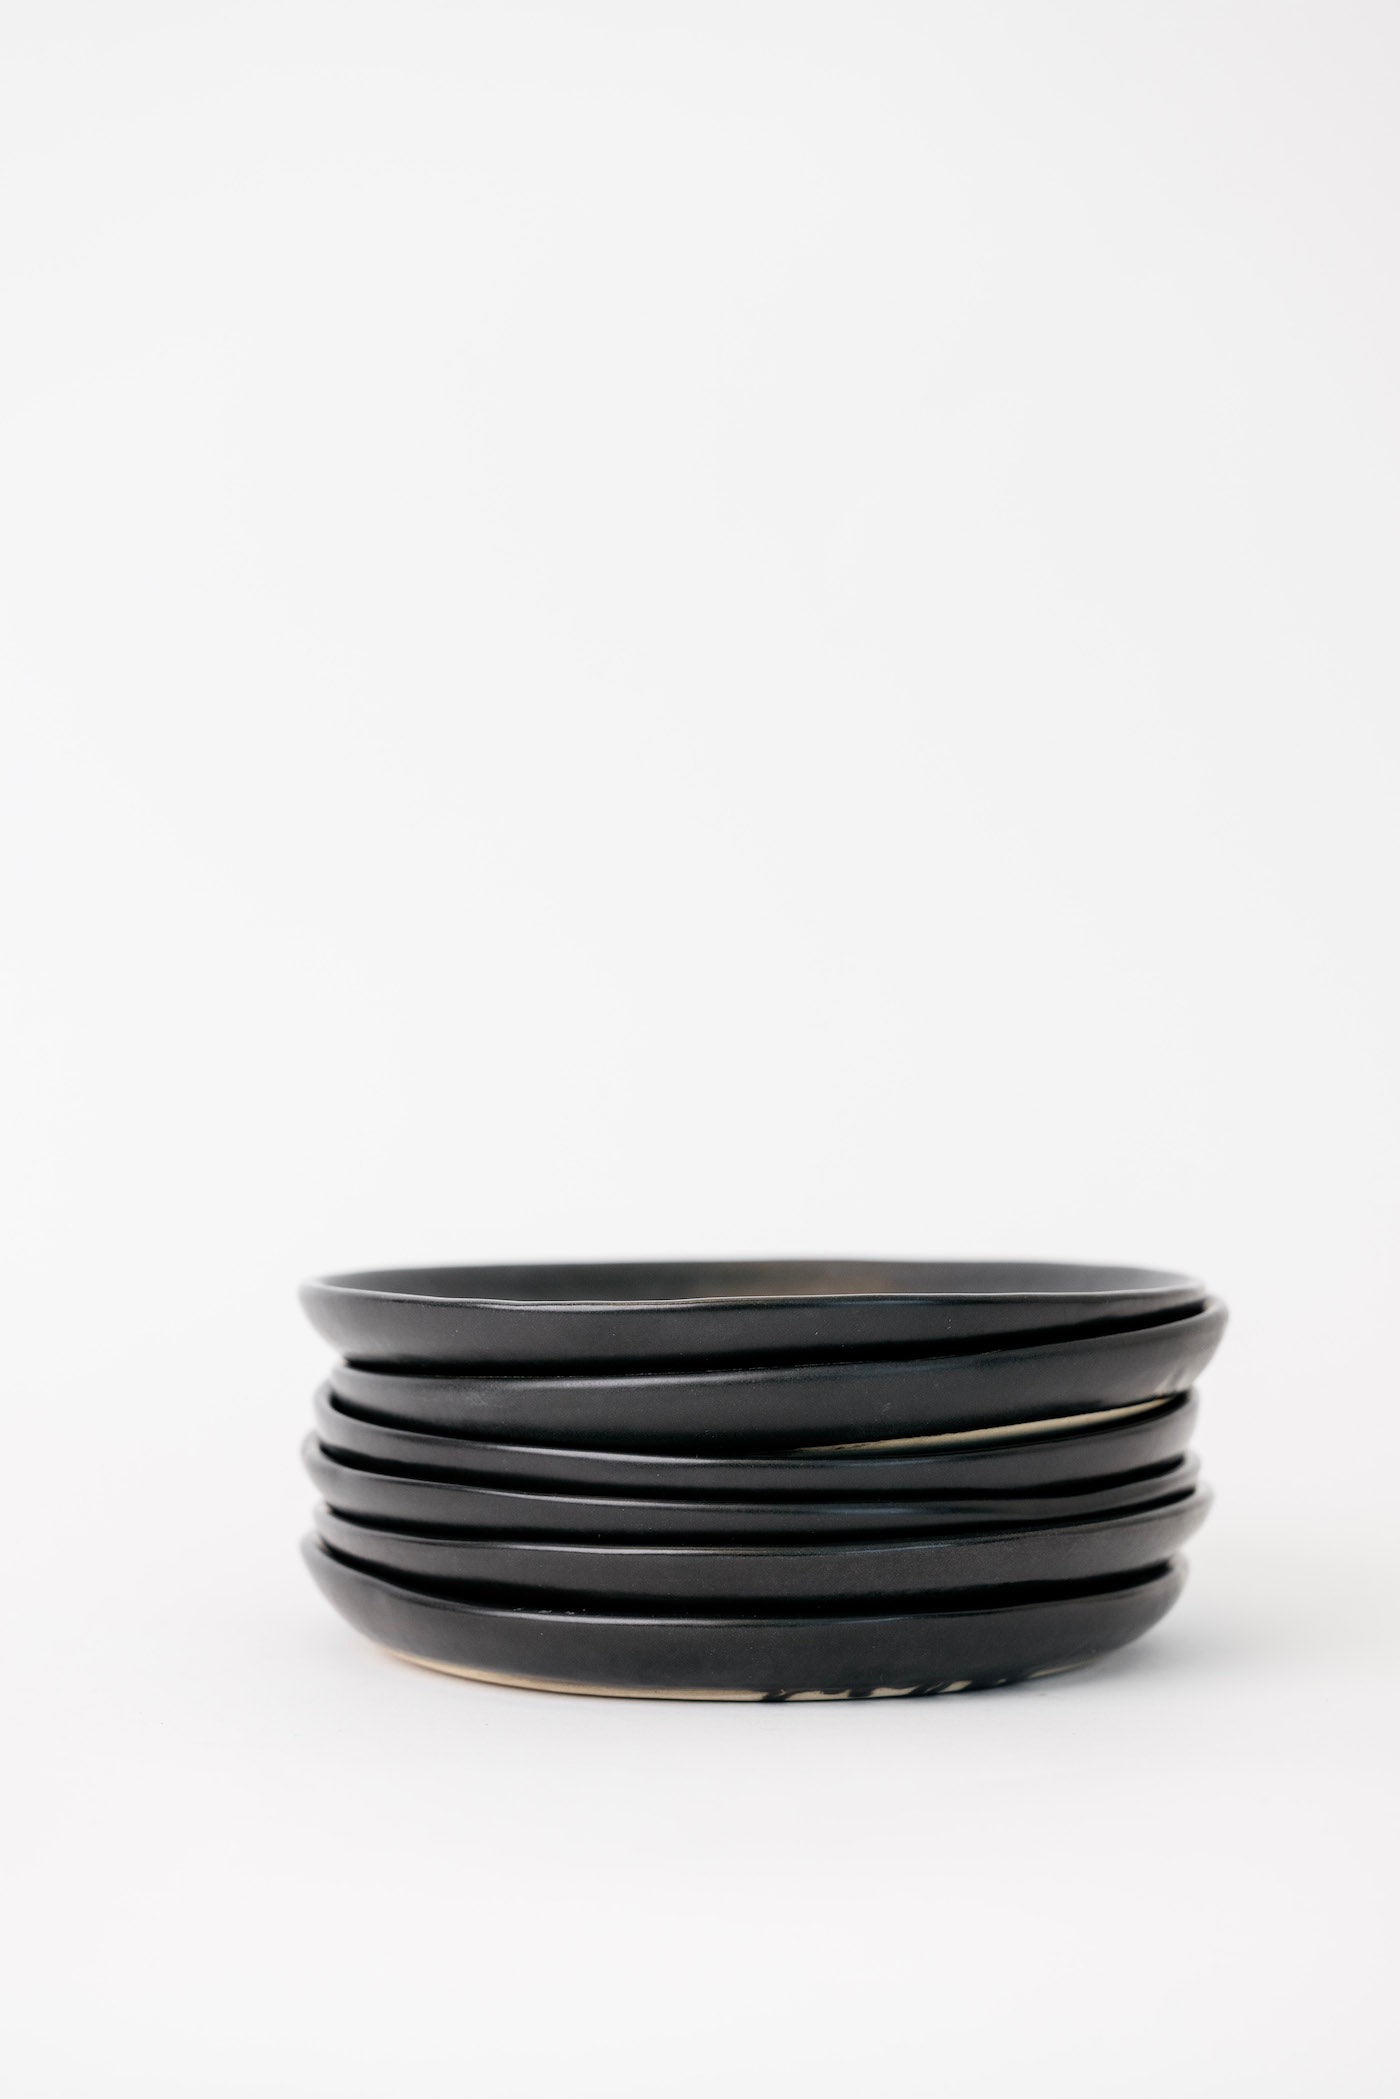 Dusk Appetizer Plate - Matte Black - Set of 6